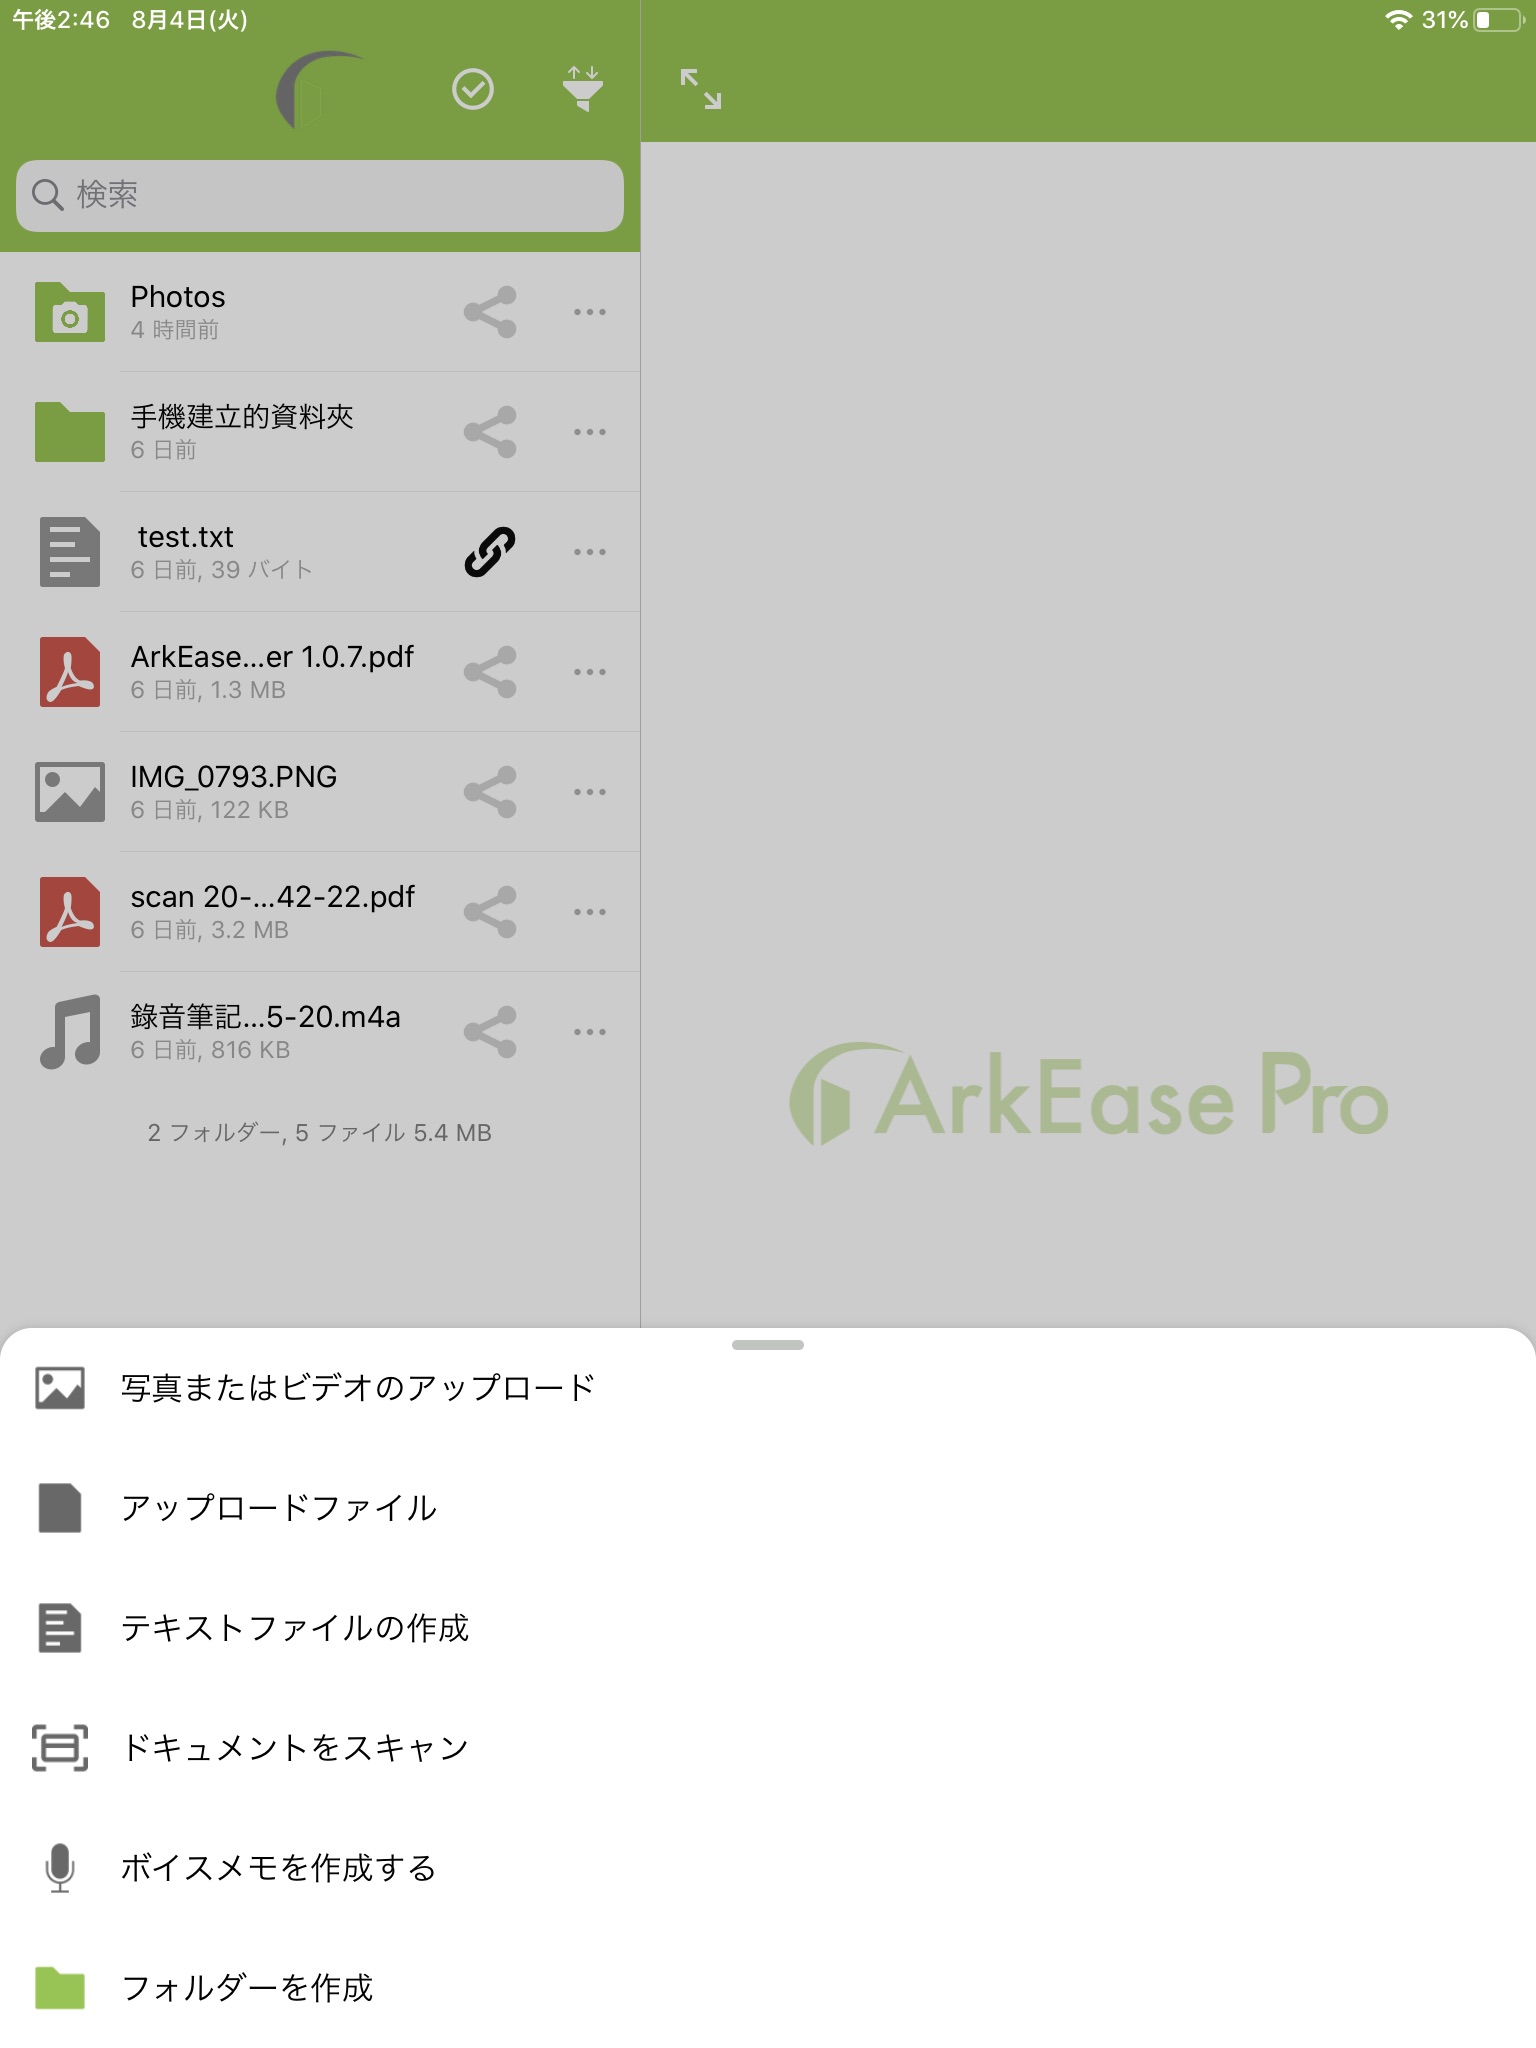 AEP - ArkEase Pro v3 screenshot 2